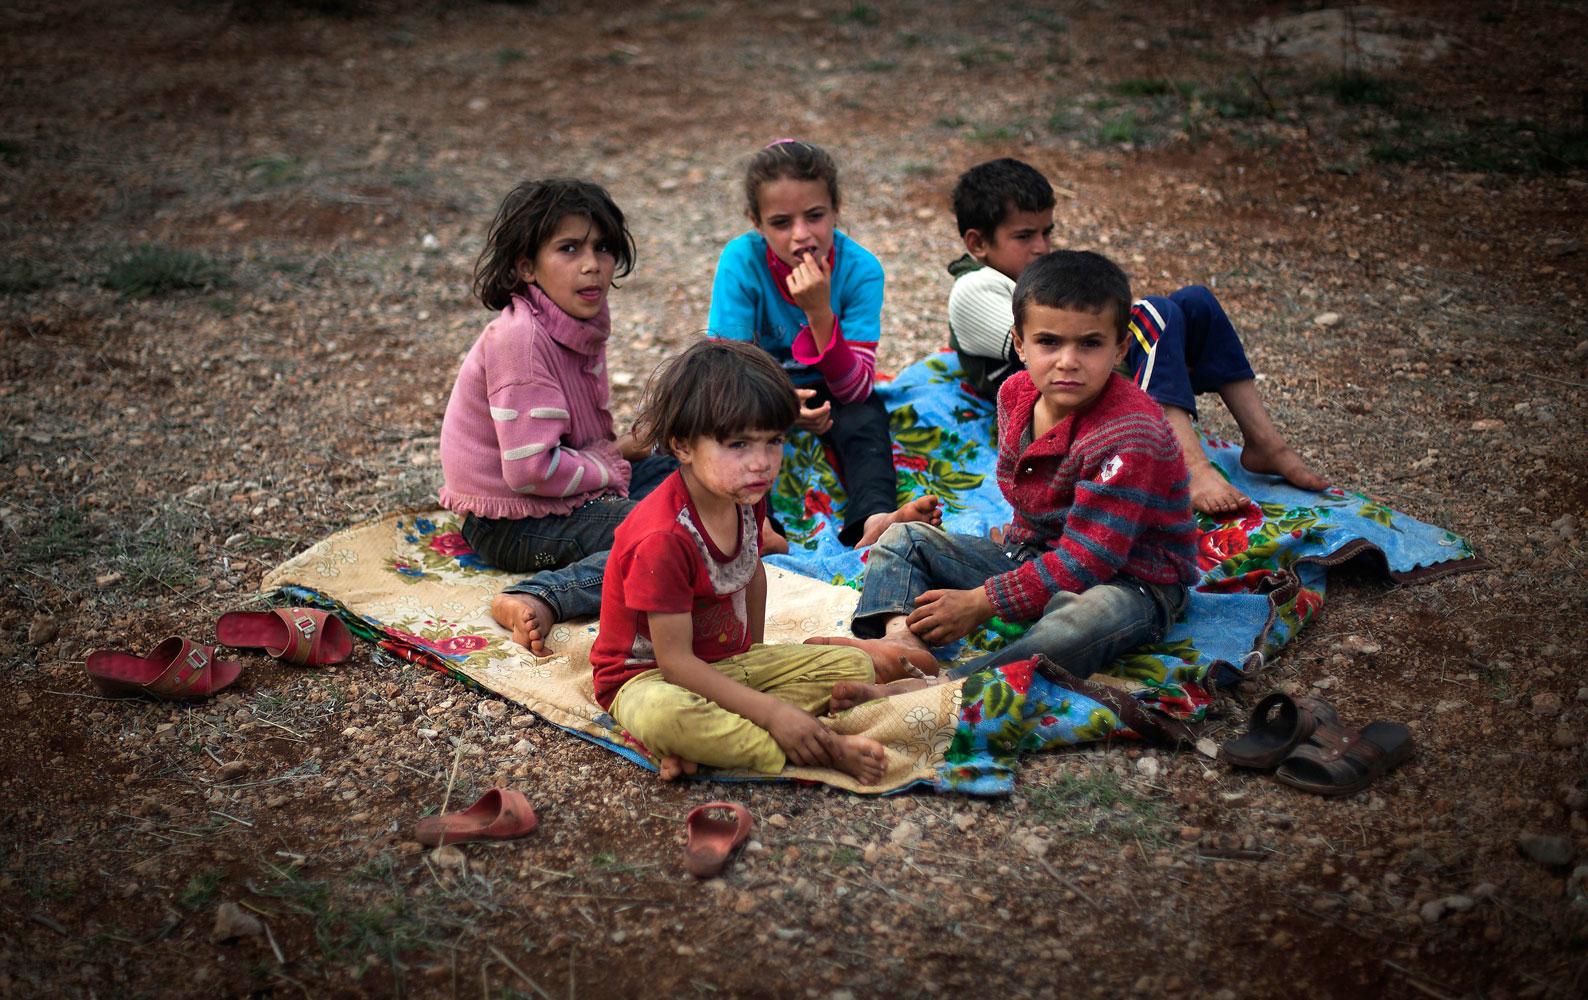 Får vänta på hjälp Barn dödas eller tvingas fly undan inbördeskriget i Syrien medan omvärlden handfallet ser på.